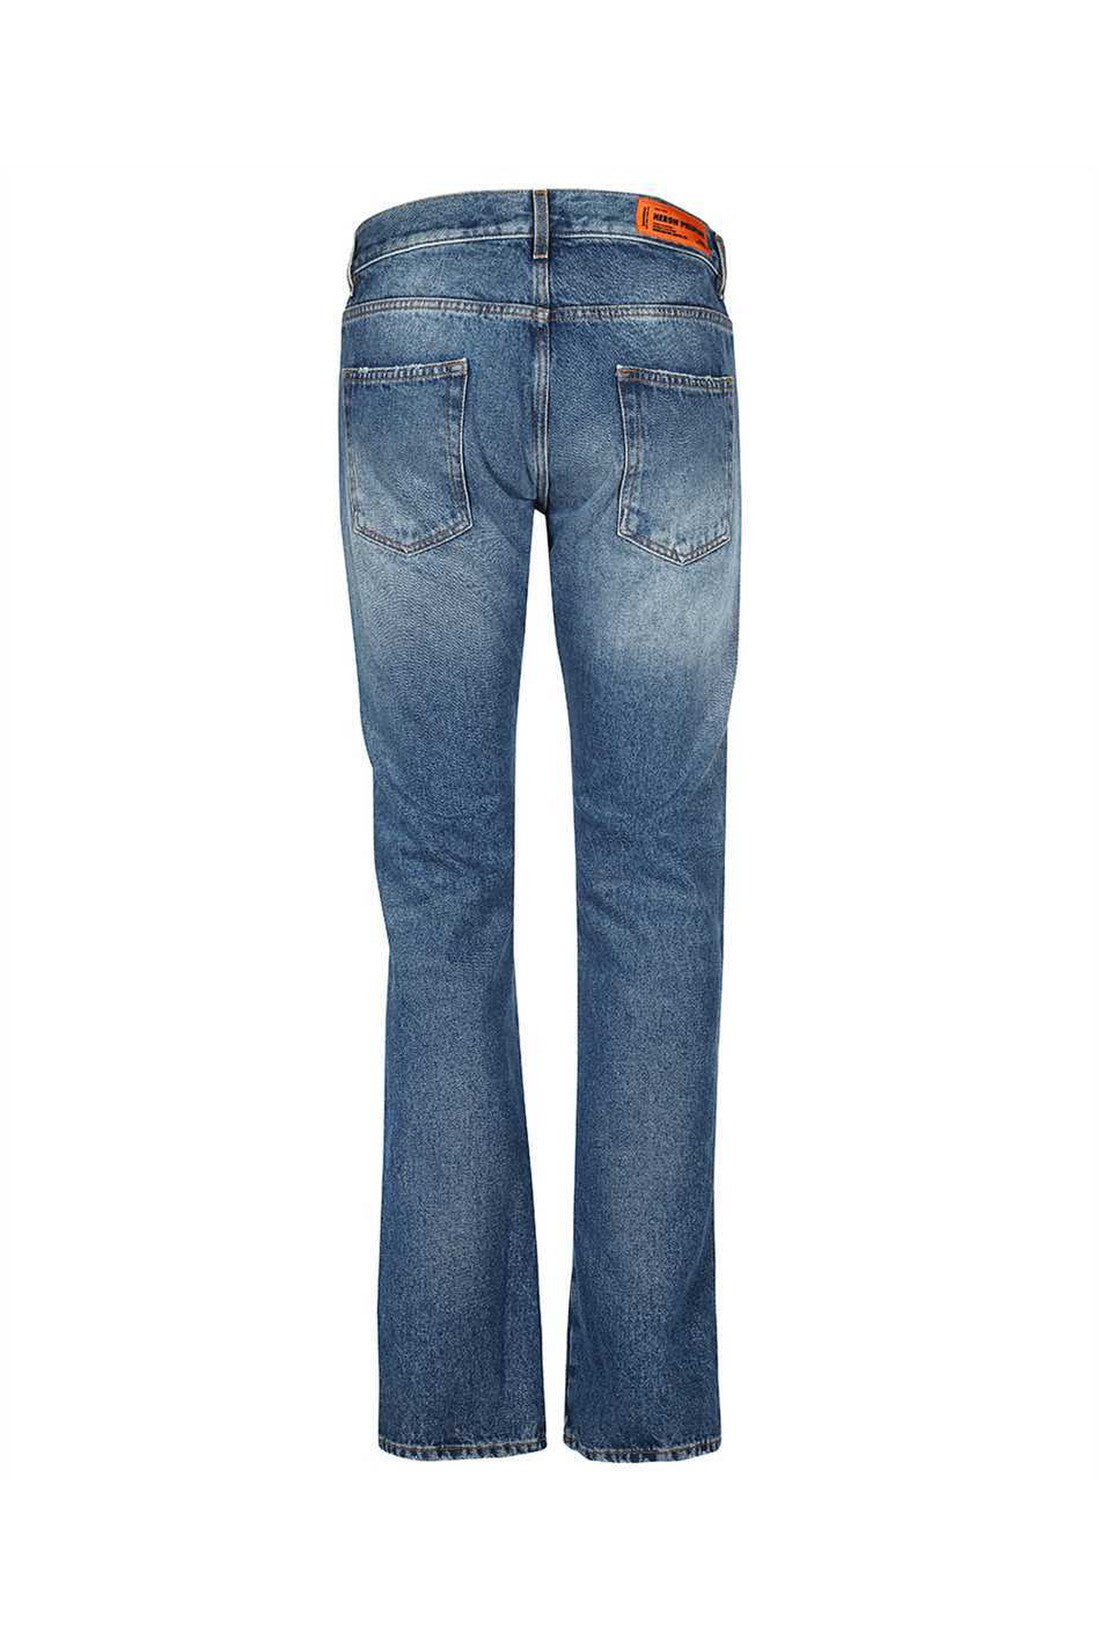 5-pocket jeans-Jeans-Heron Preston-OUTLET-SALE-ARCHIVIST